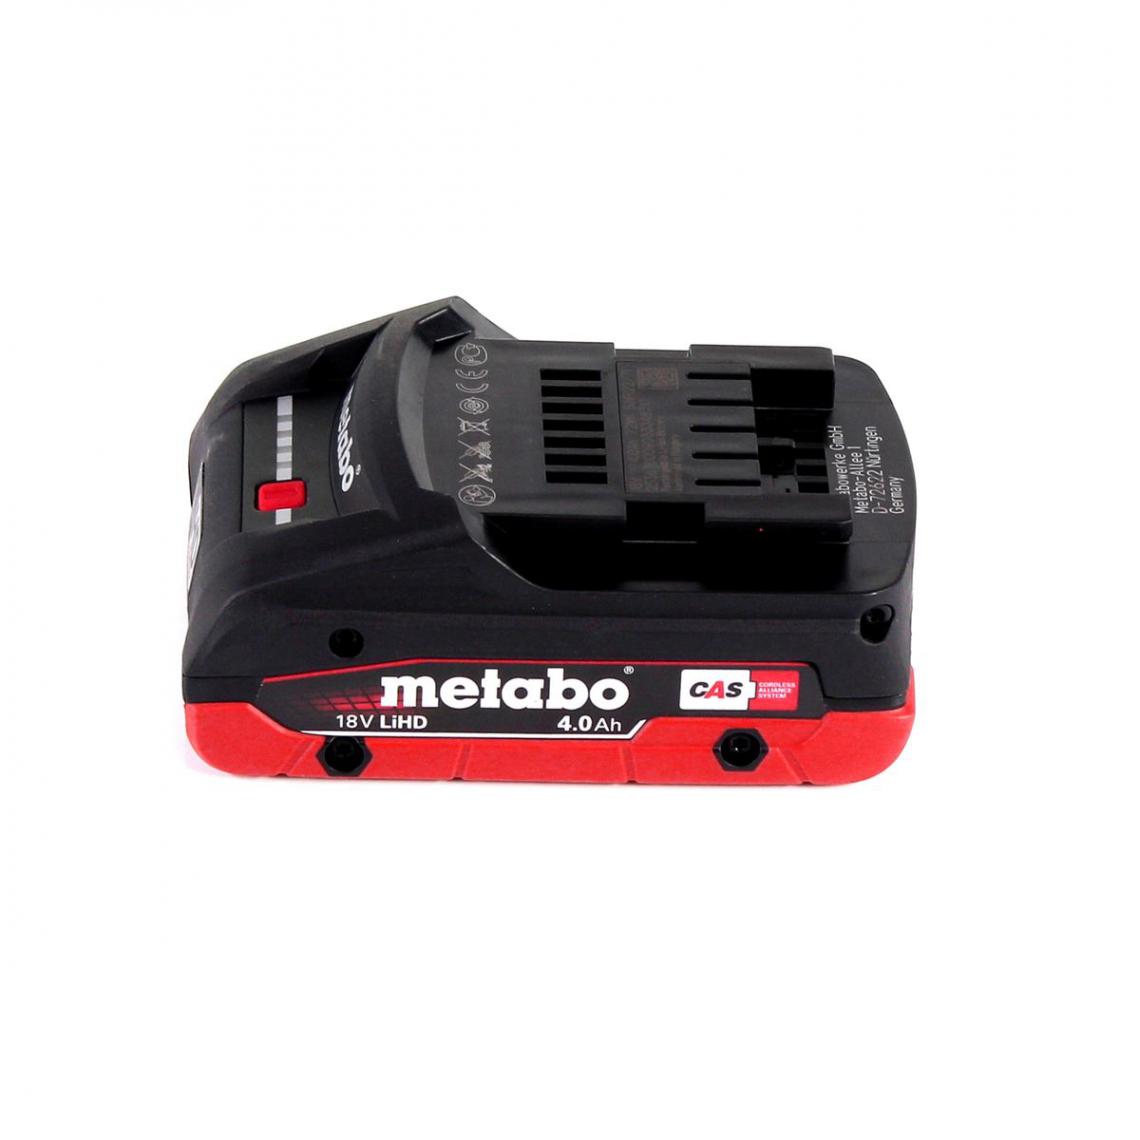 Metabo - Metabo STA 18 LTX 100 Scie sauteuse sans fil 18V ( 601002840 ) + 1x Batterie 4,0Ah - sans chargeur + Coffret de transport - Scies sauteuses